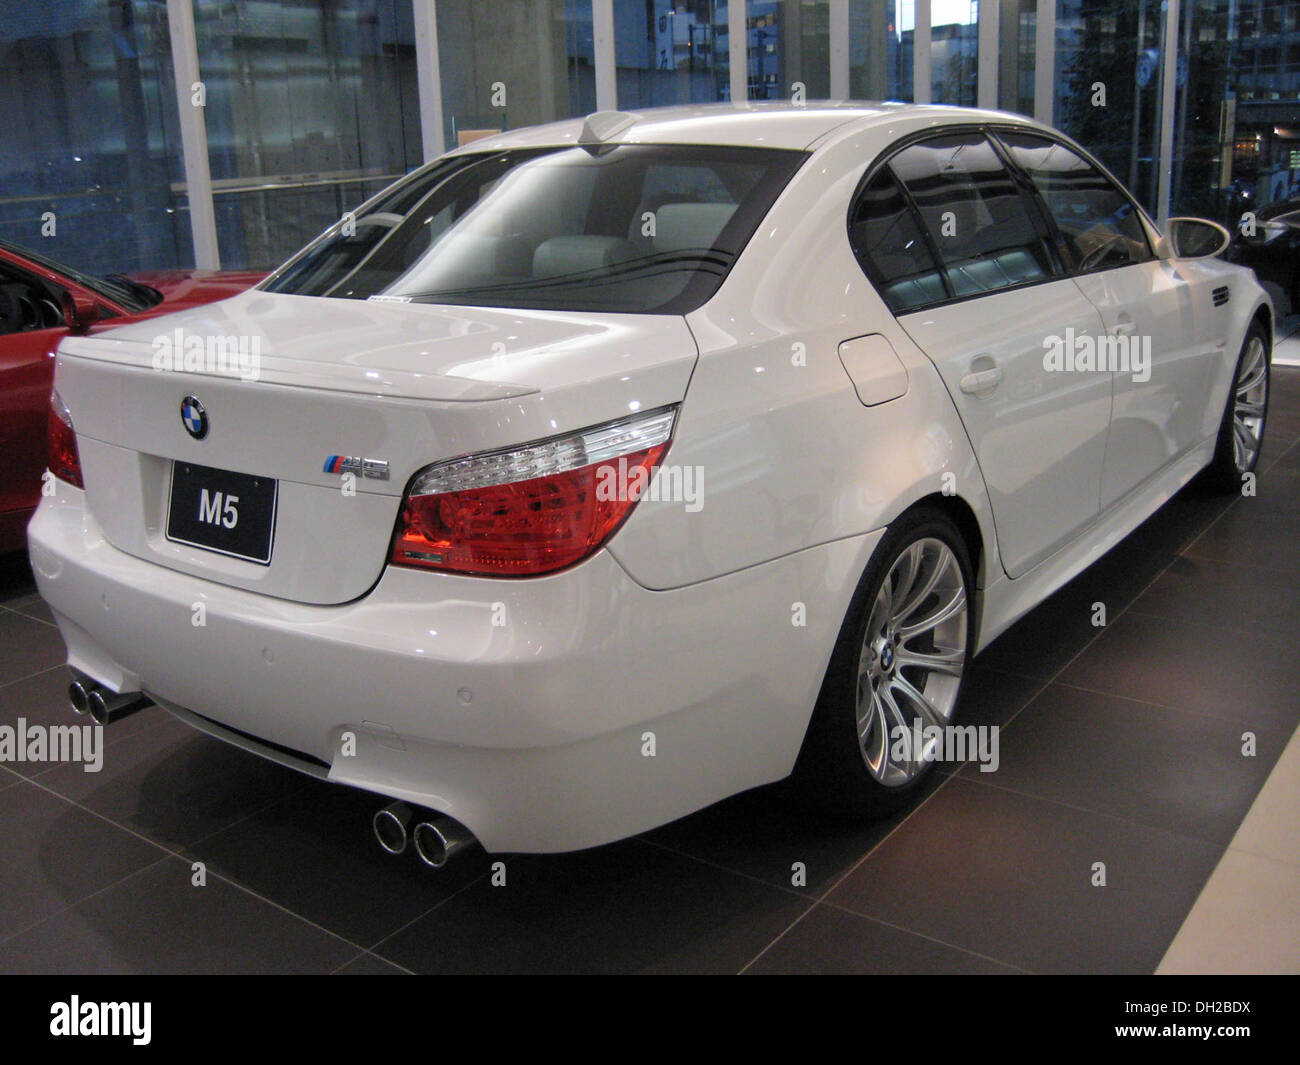 BMW E60 M5 2 Stockfotografie - Alamy